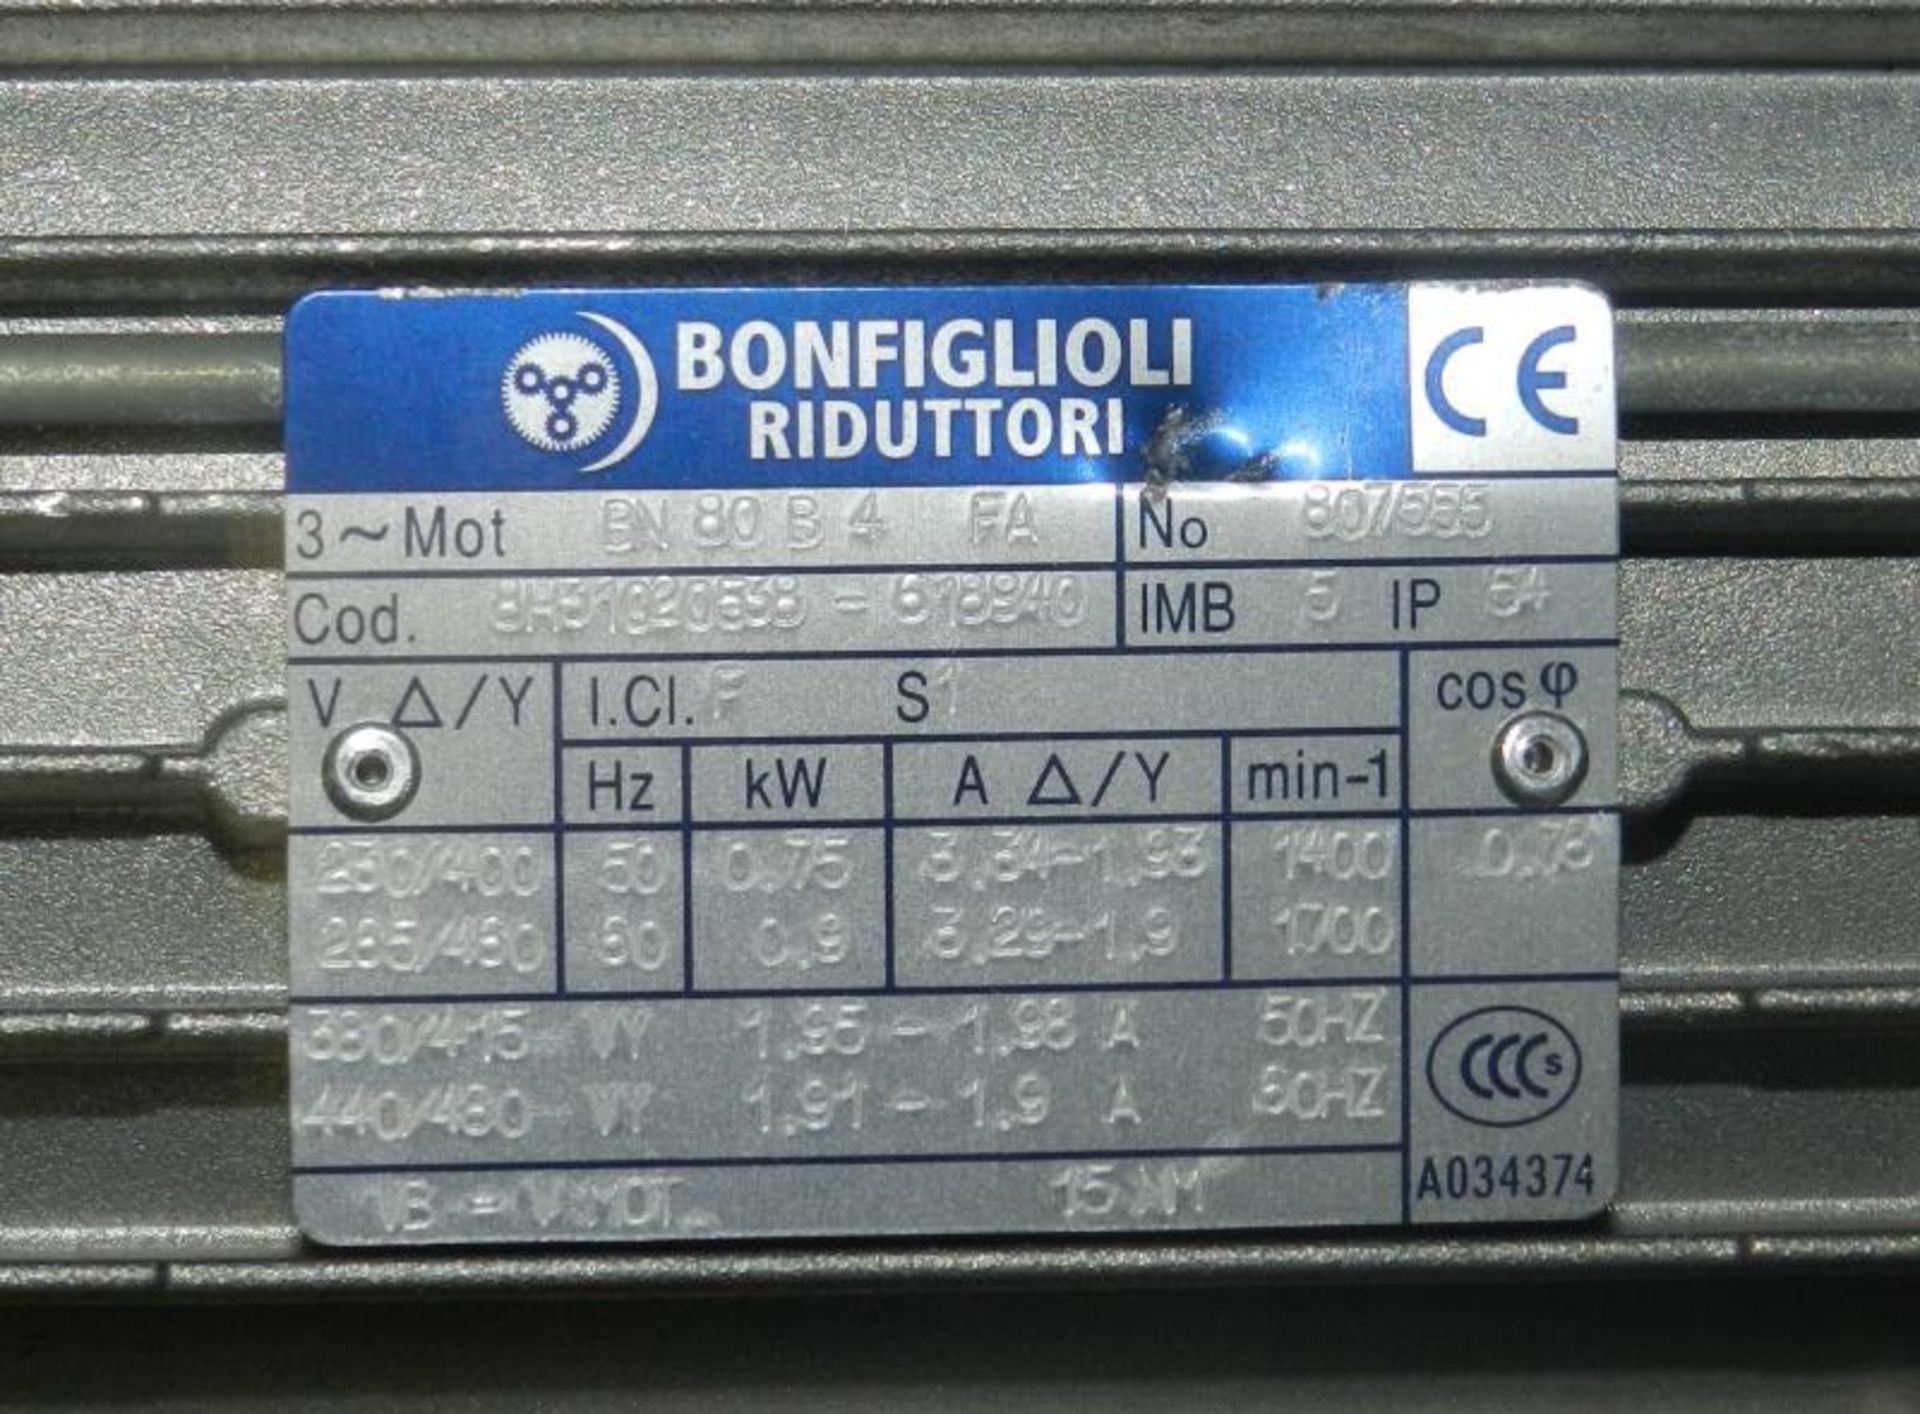 Bonfiglioli Riduttori BN80B4 FA Motor 0.75/0.9 kW ~ New in Box - Image 4 of 5